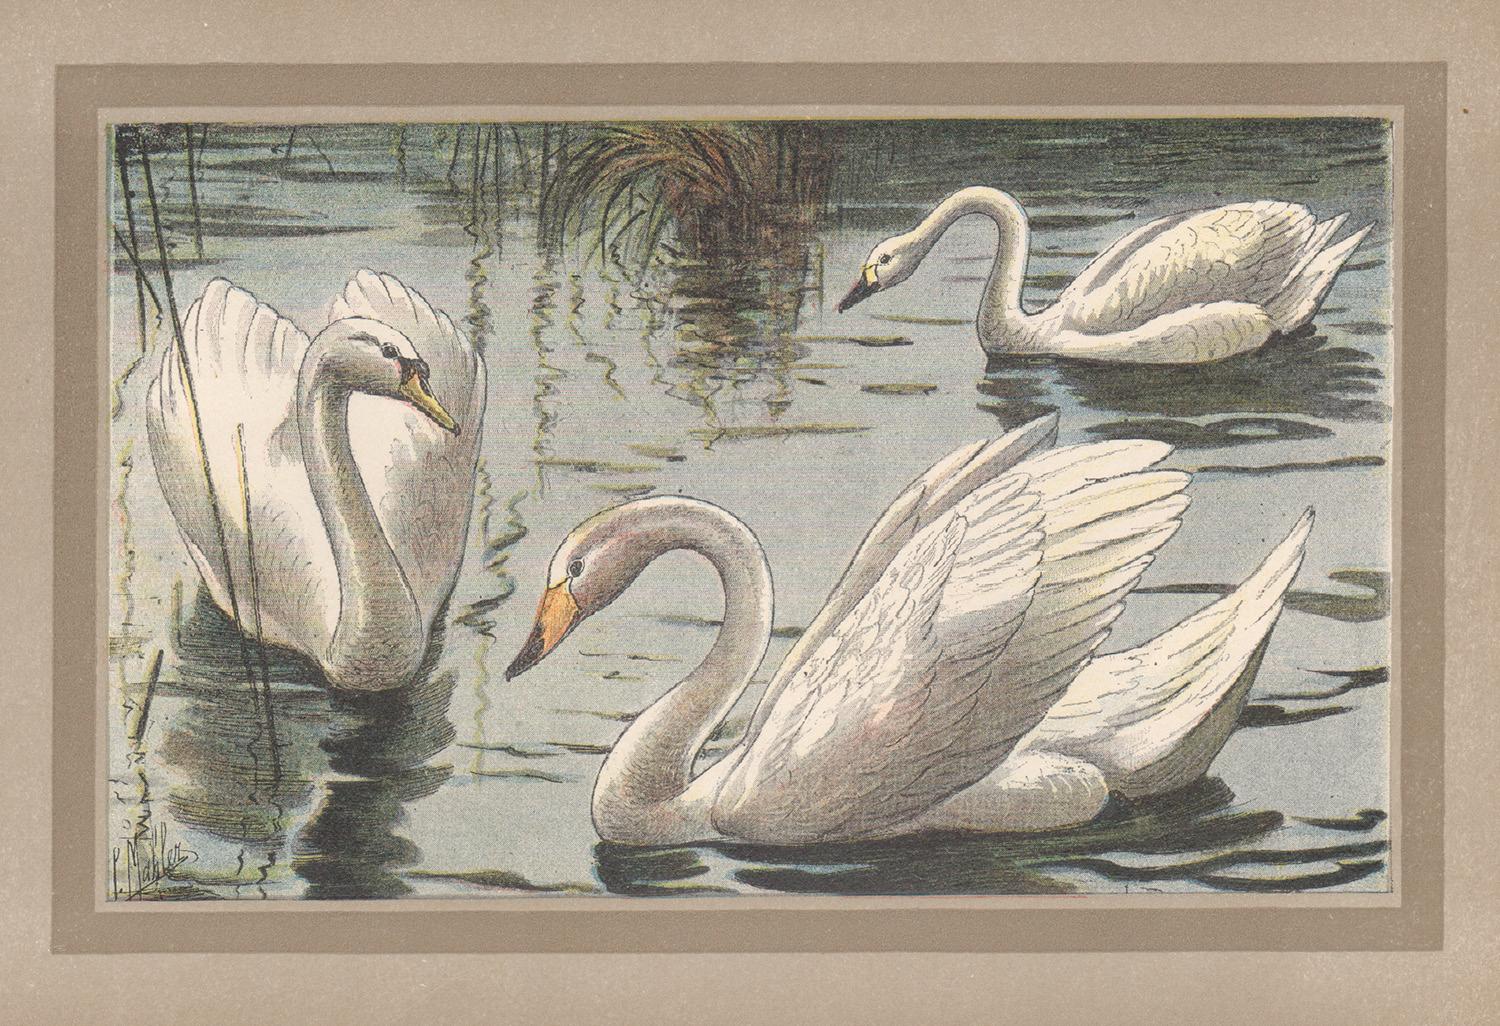 Animal Print Unknown - Swan, impression chromolithographie d'illustration d'un cygne de l'histoire naturelle française et ancienne